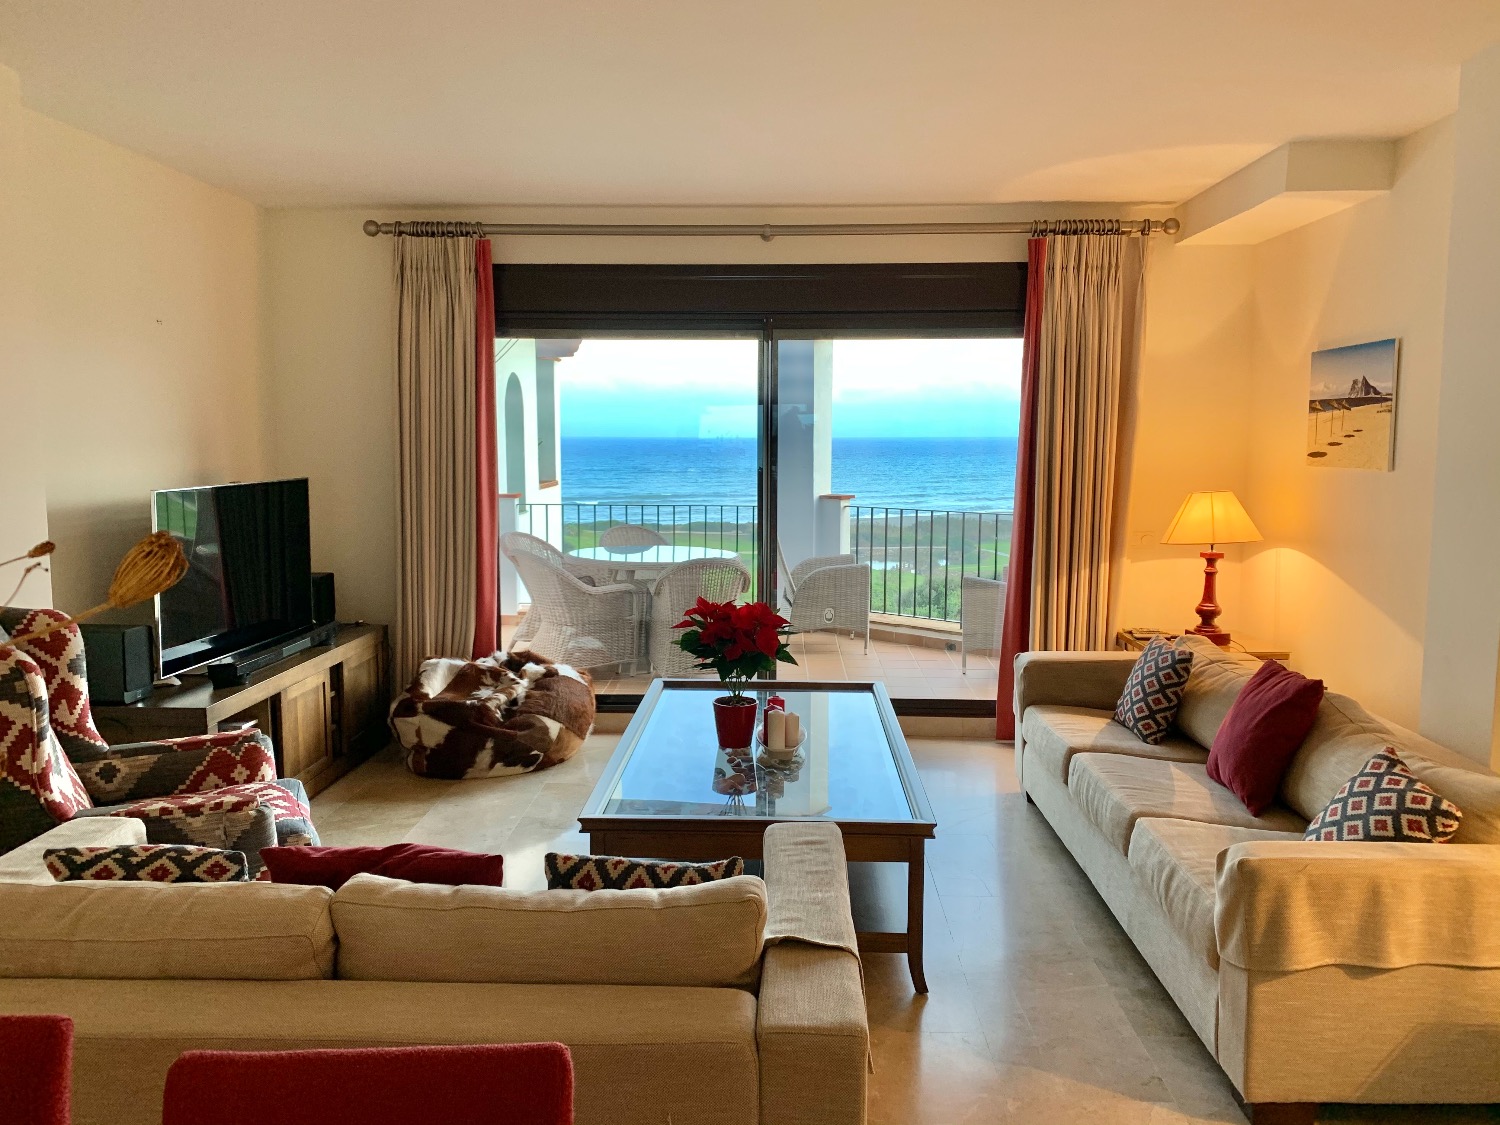 Espectaculares vistas al mar desde este hermoso apartamento ubicado en primera línea de playa